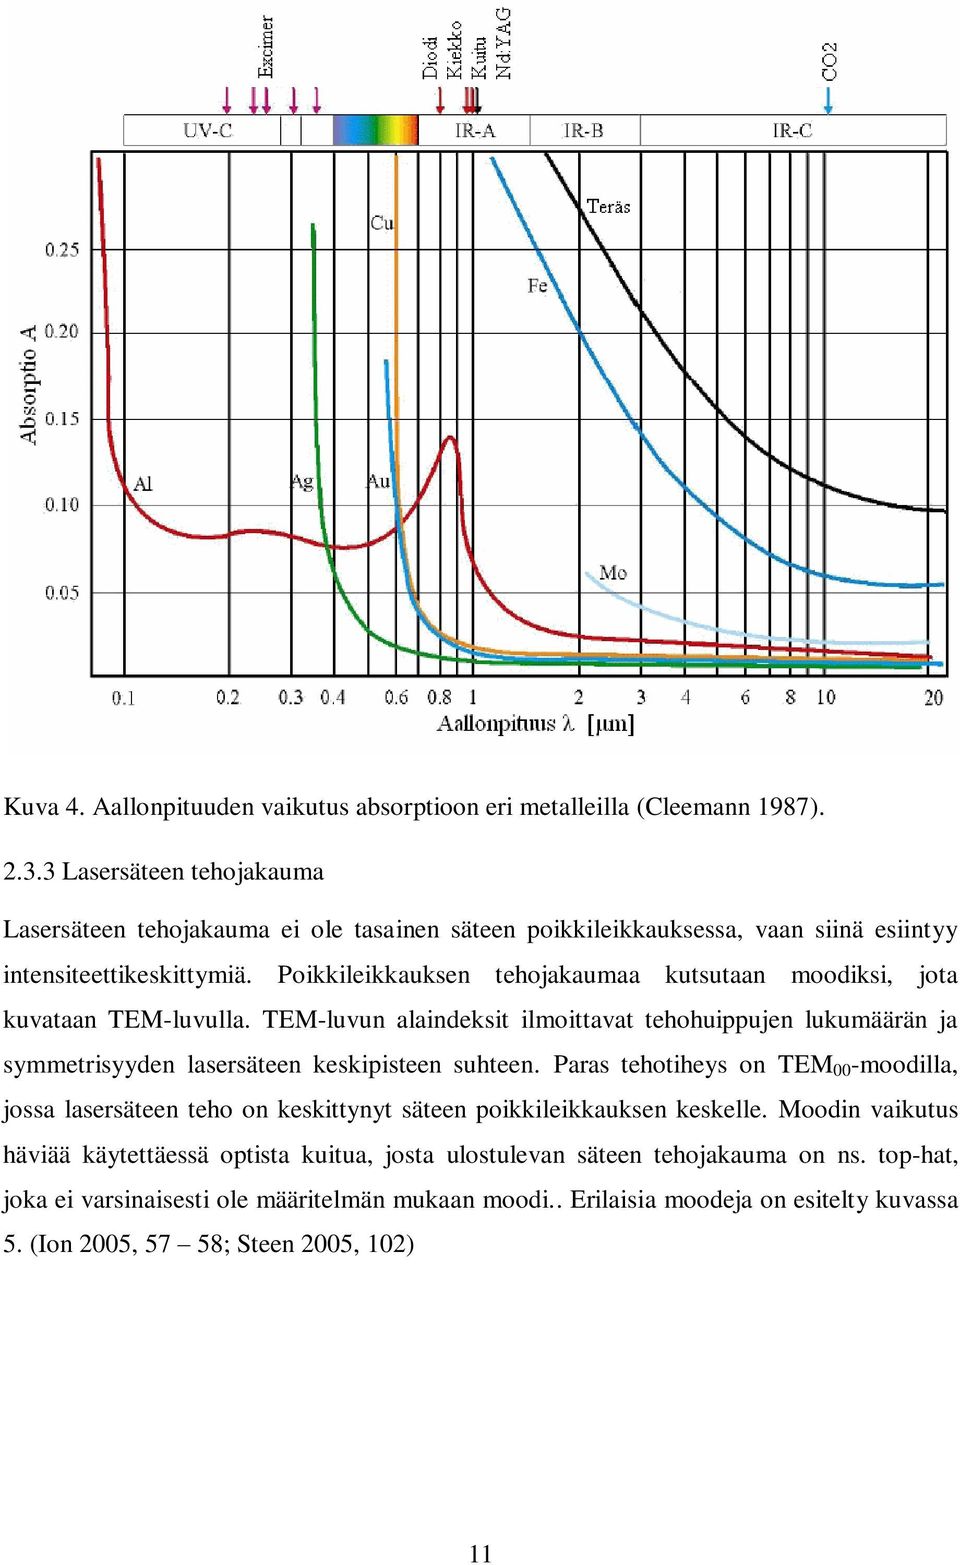 Poikkileikkauksen tehojakaumaa kutsutaan moodiksi, jota kuvataan TEM-luvulla. TEM-luvun alaindeksit ilmoittavat tehohuippujen lukumäärän ja symmetrisyyden lasersäteen keskipisteen suhteen.